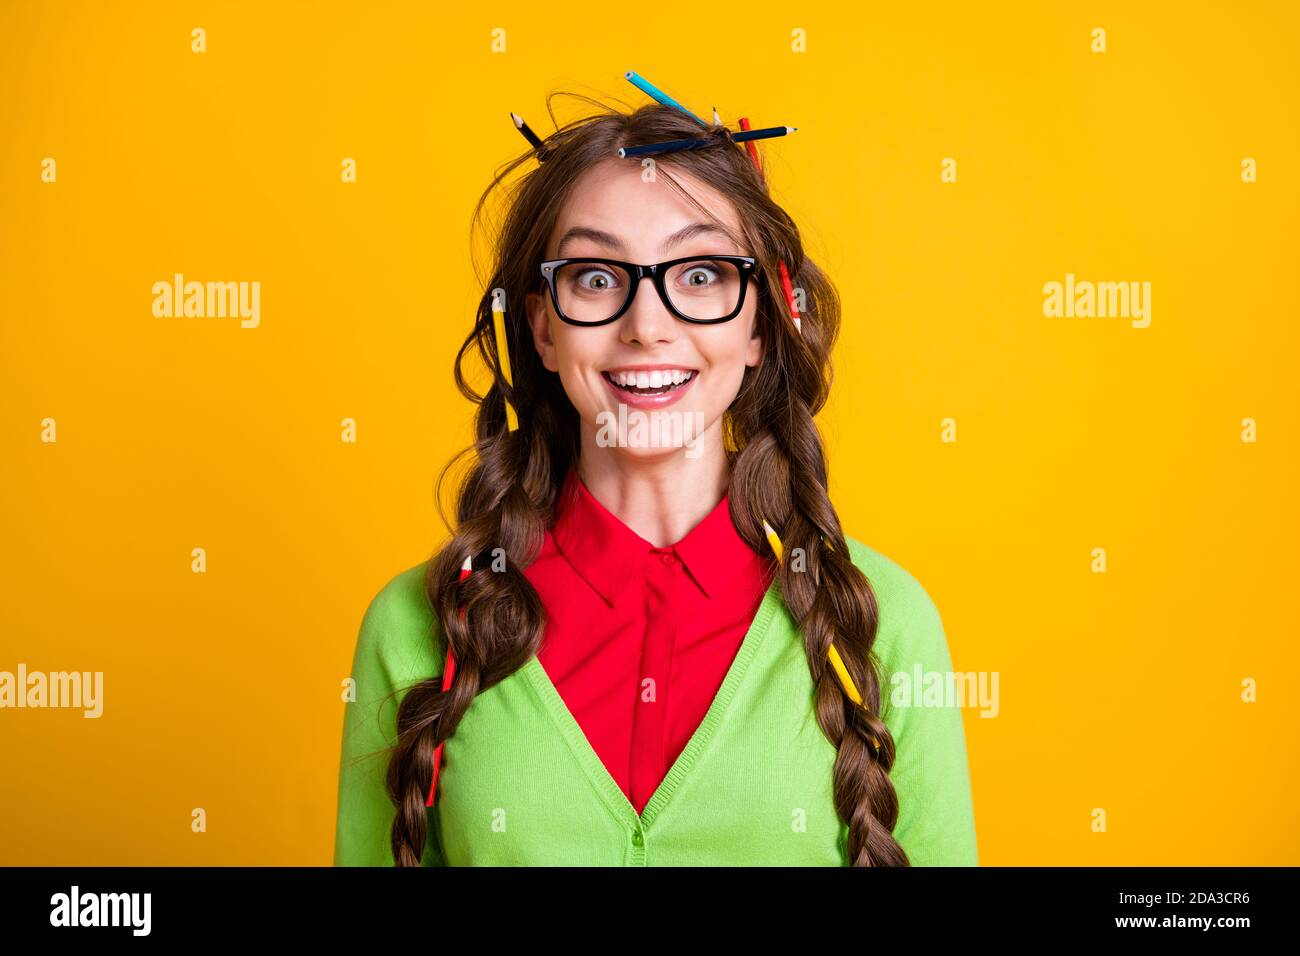 Foto von positiven Mädchen mit Bleistift Haarschnitt erstaunt Blick in Kamera isoliert Glanzfarbe Hintergrund Stockfoto